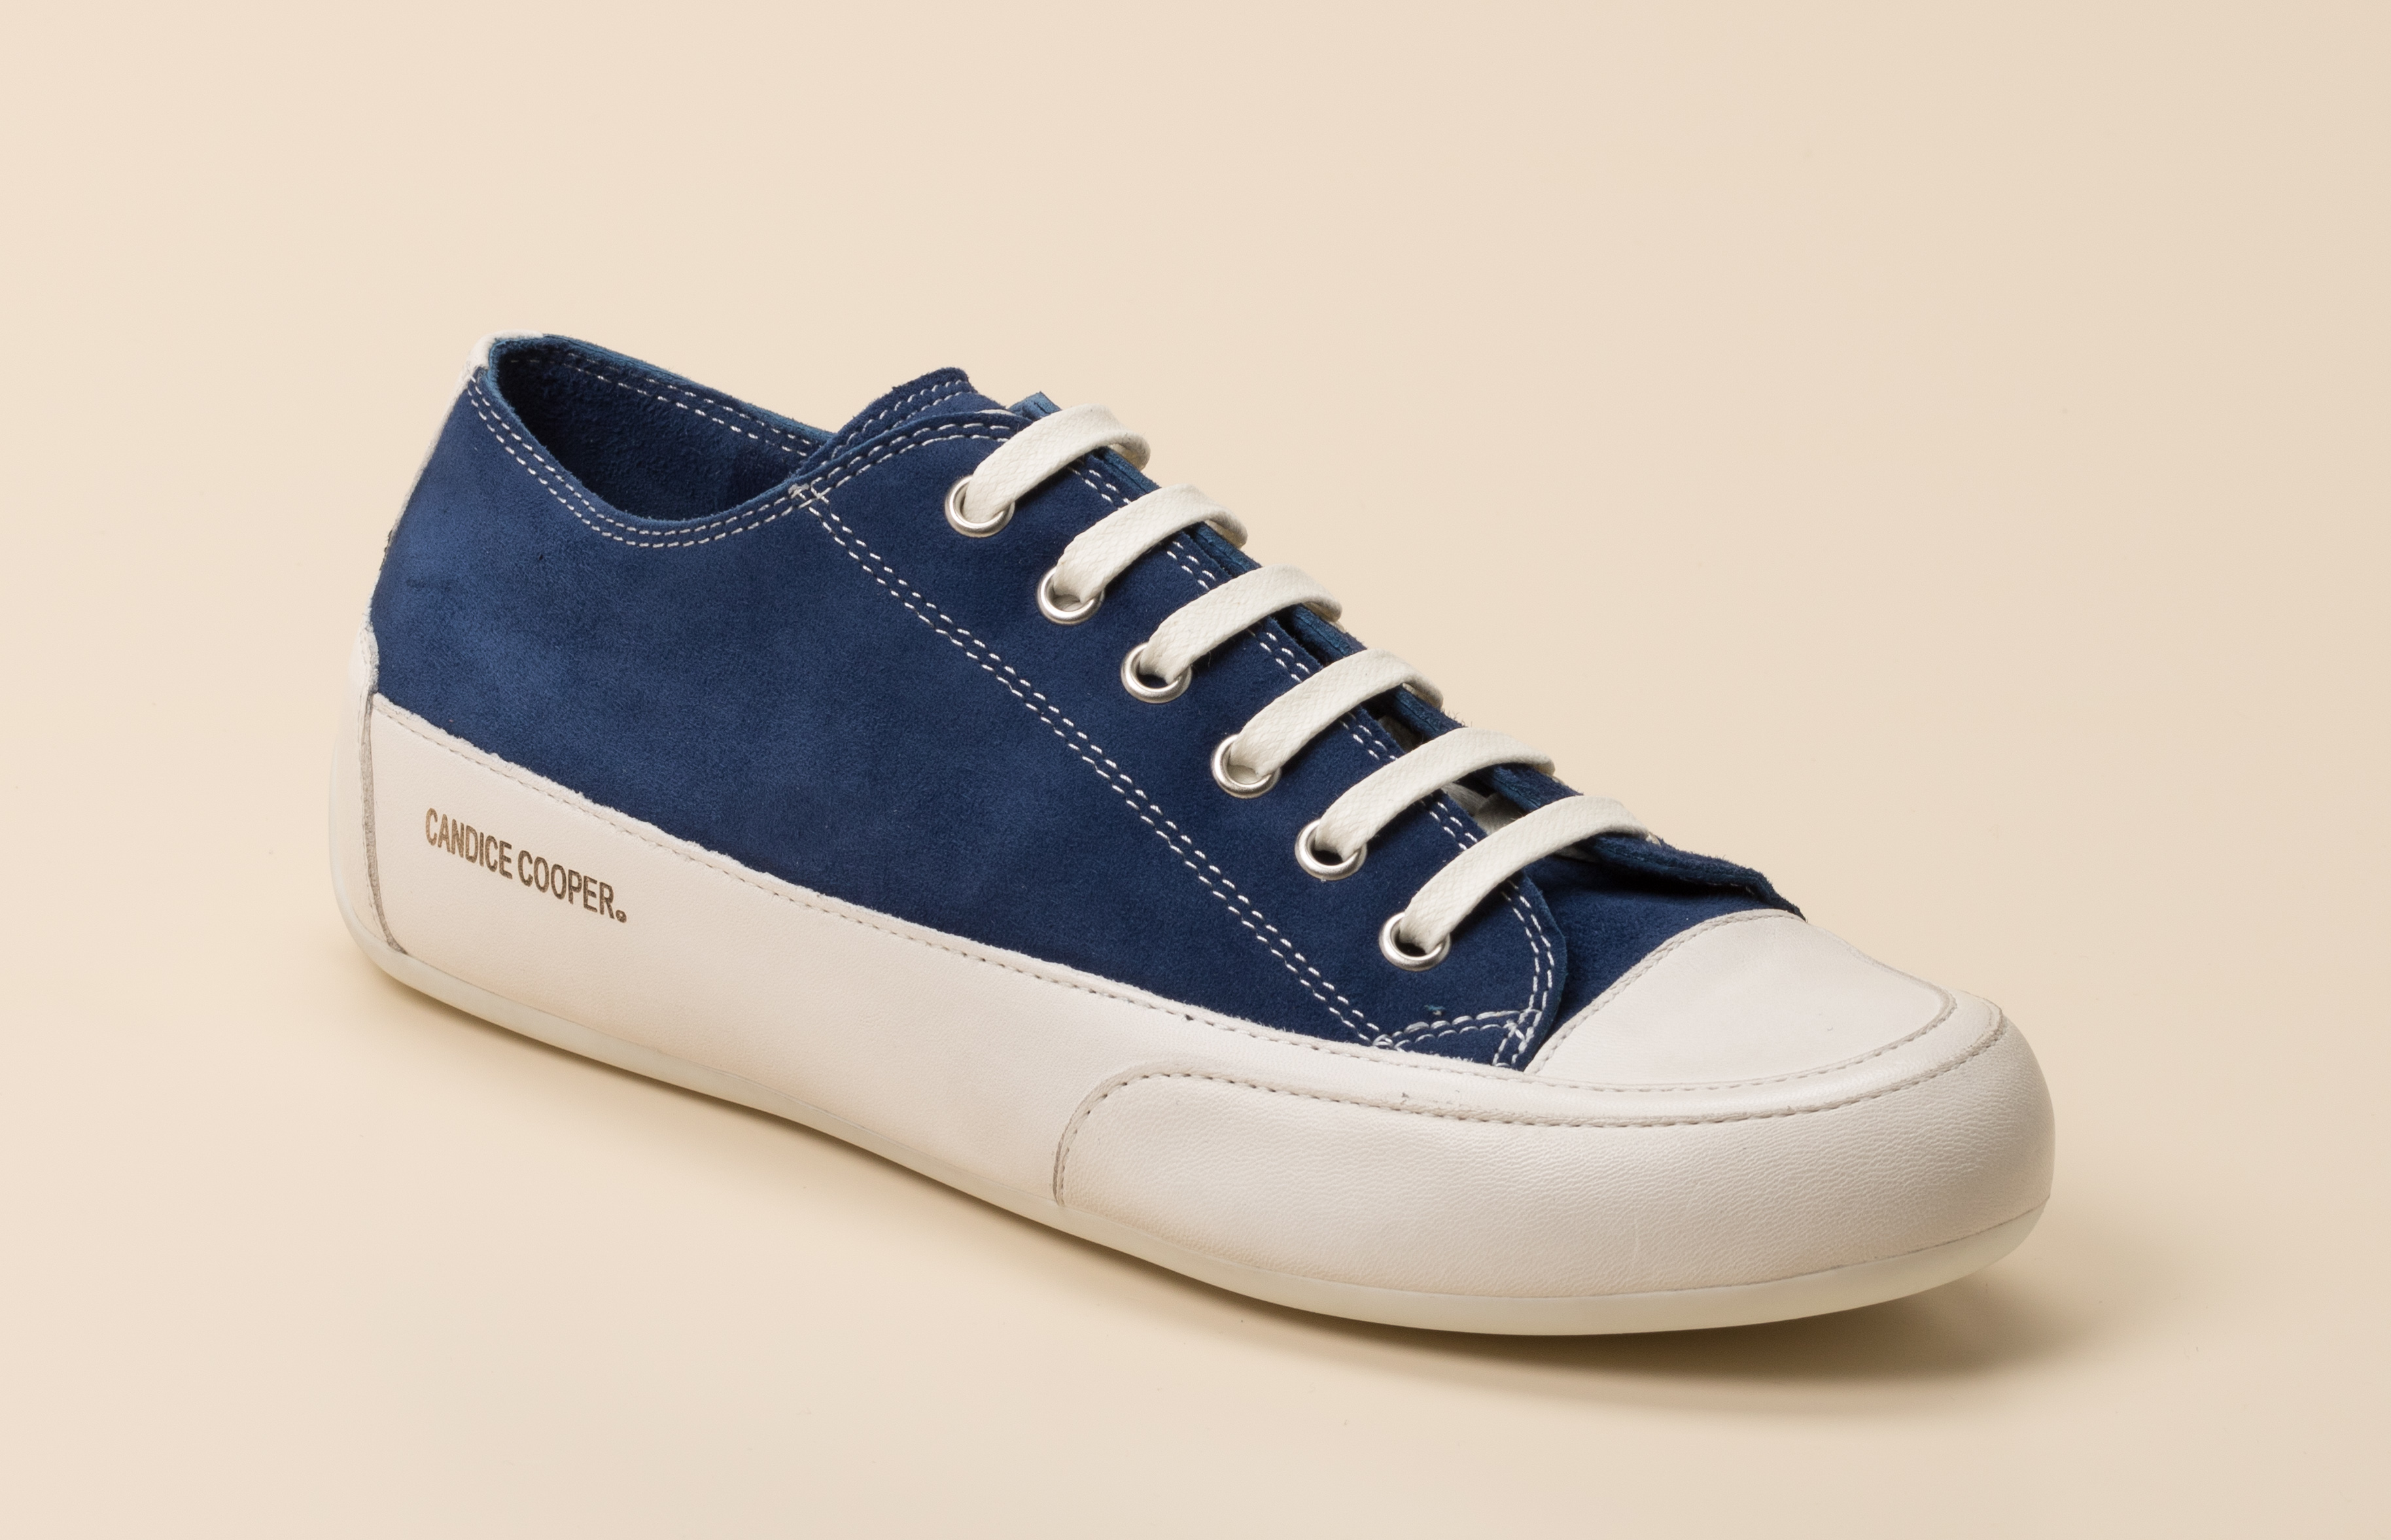 Candice Cooper Damen Sneaker in blau 